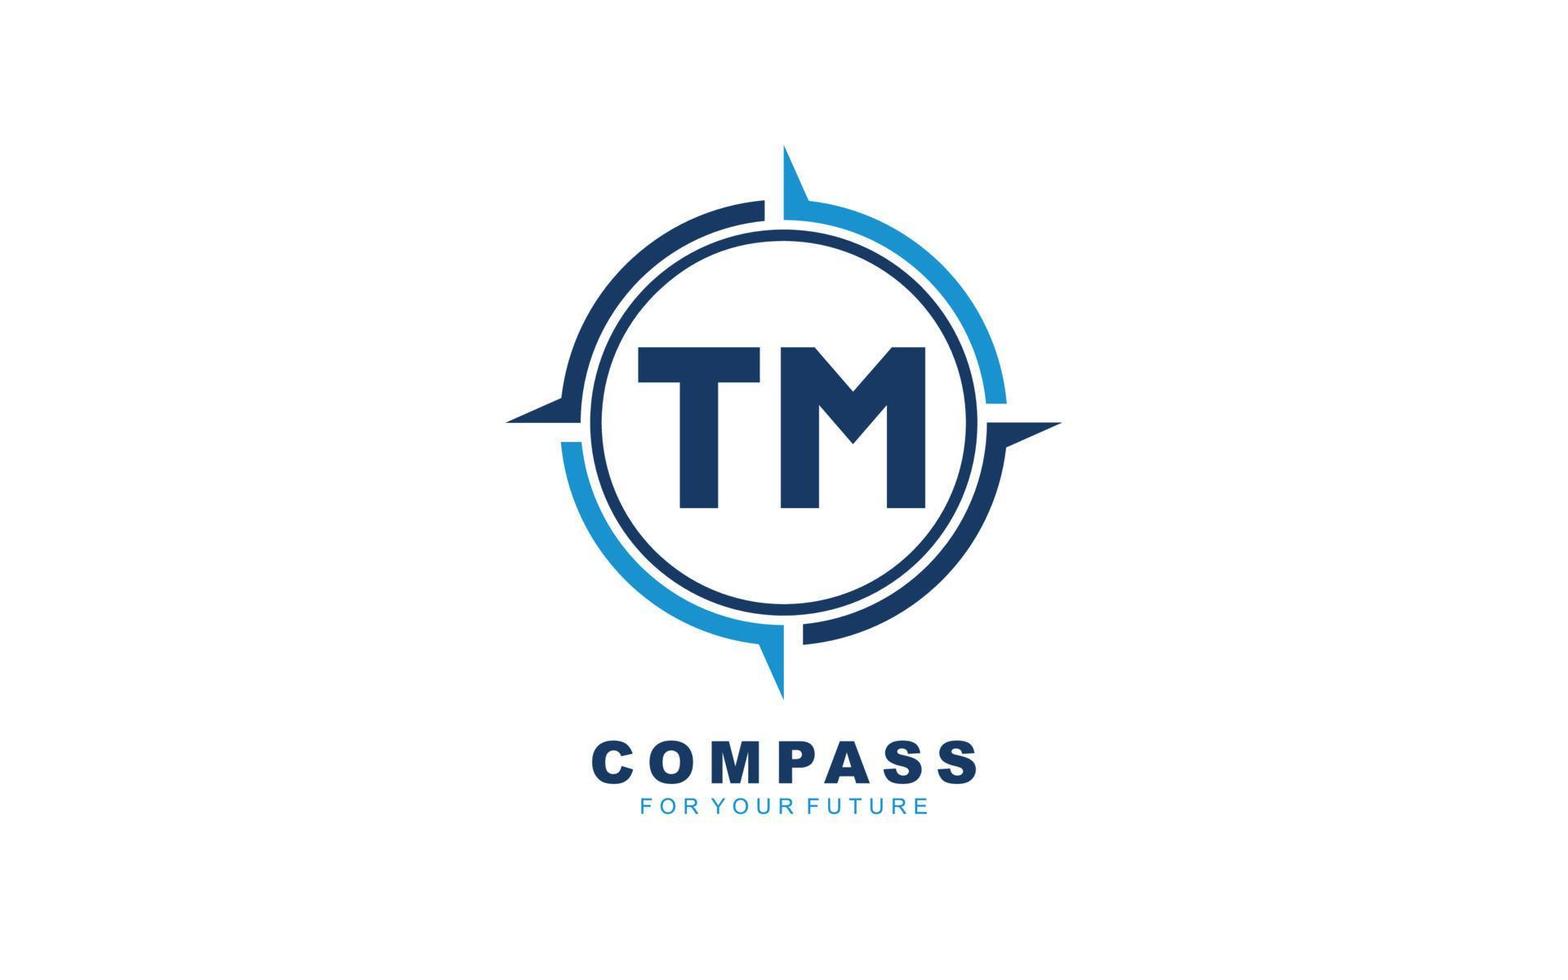 tm logo navigatie voor branding bedrijf. kompas sjabloon vector illustratie voor uw merk.